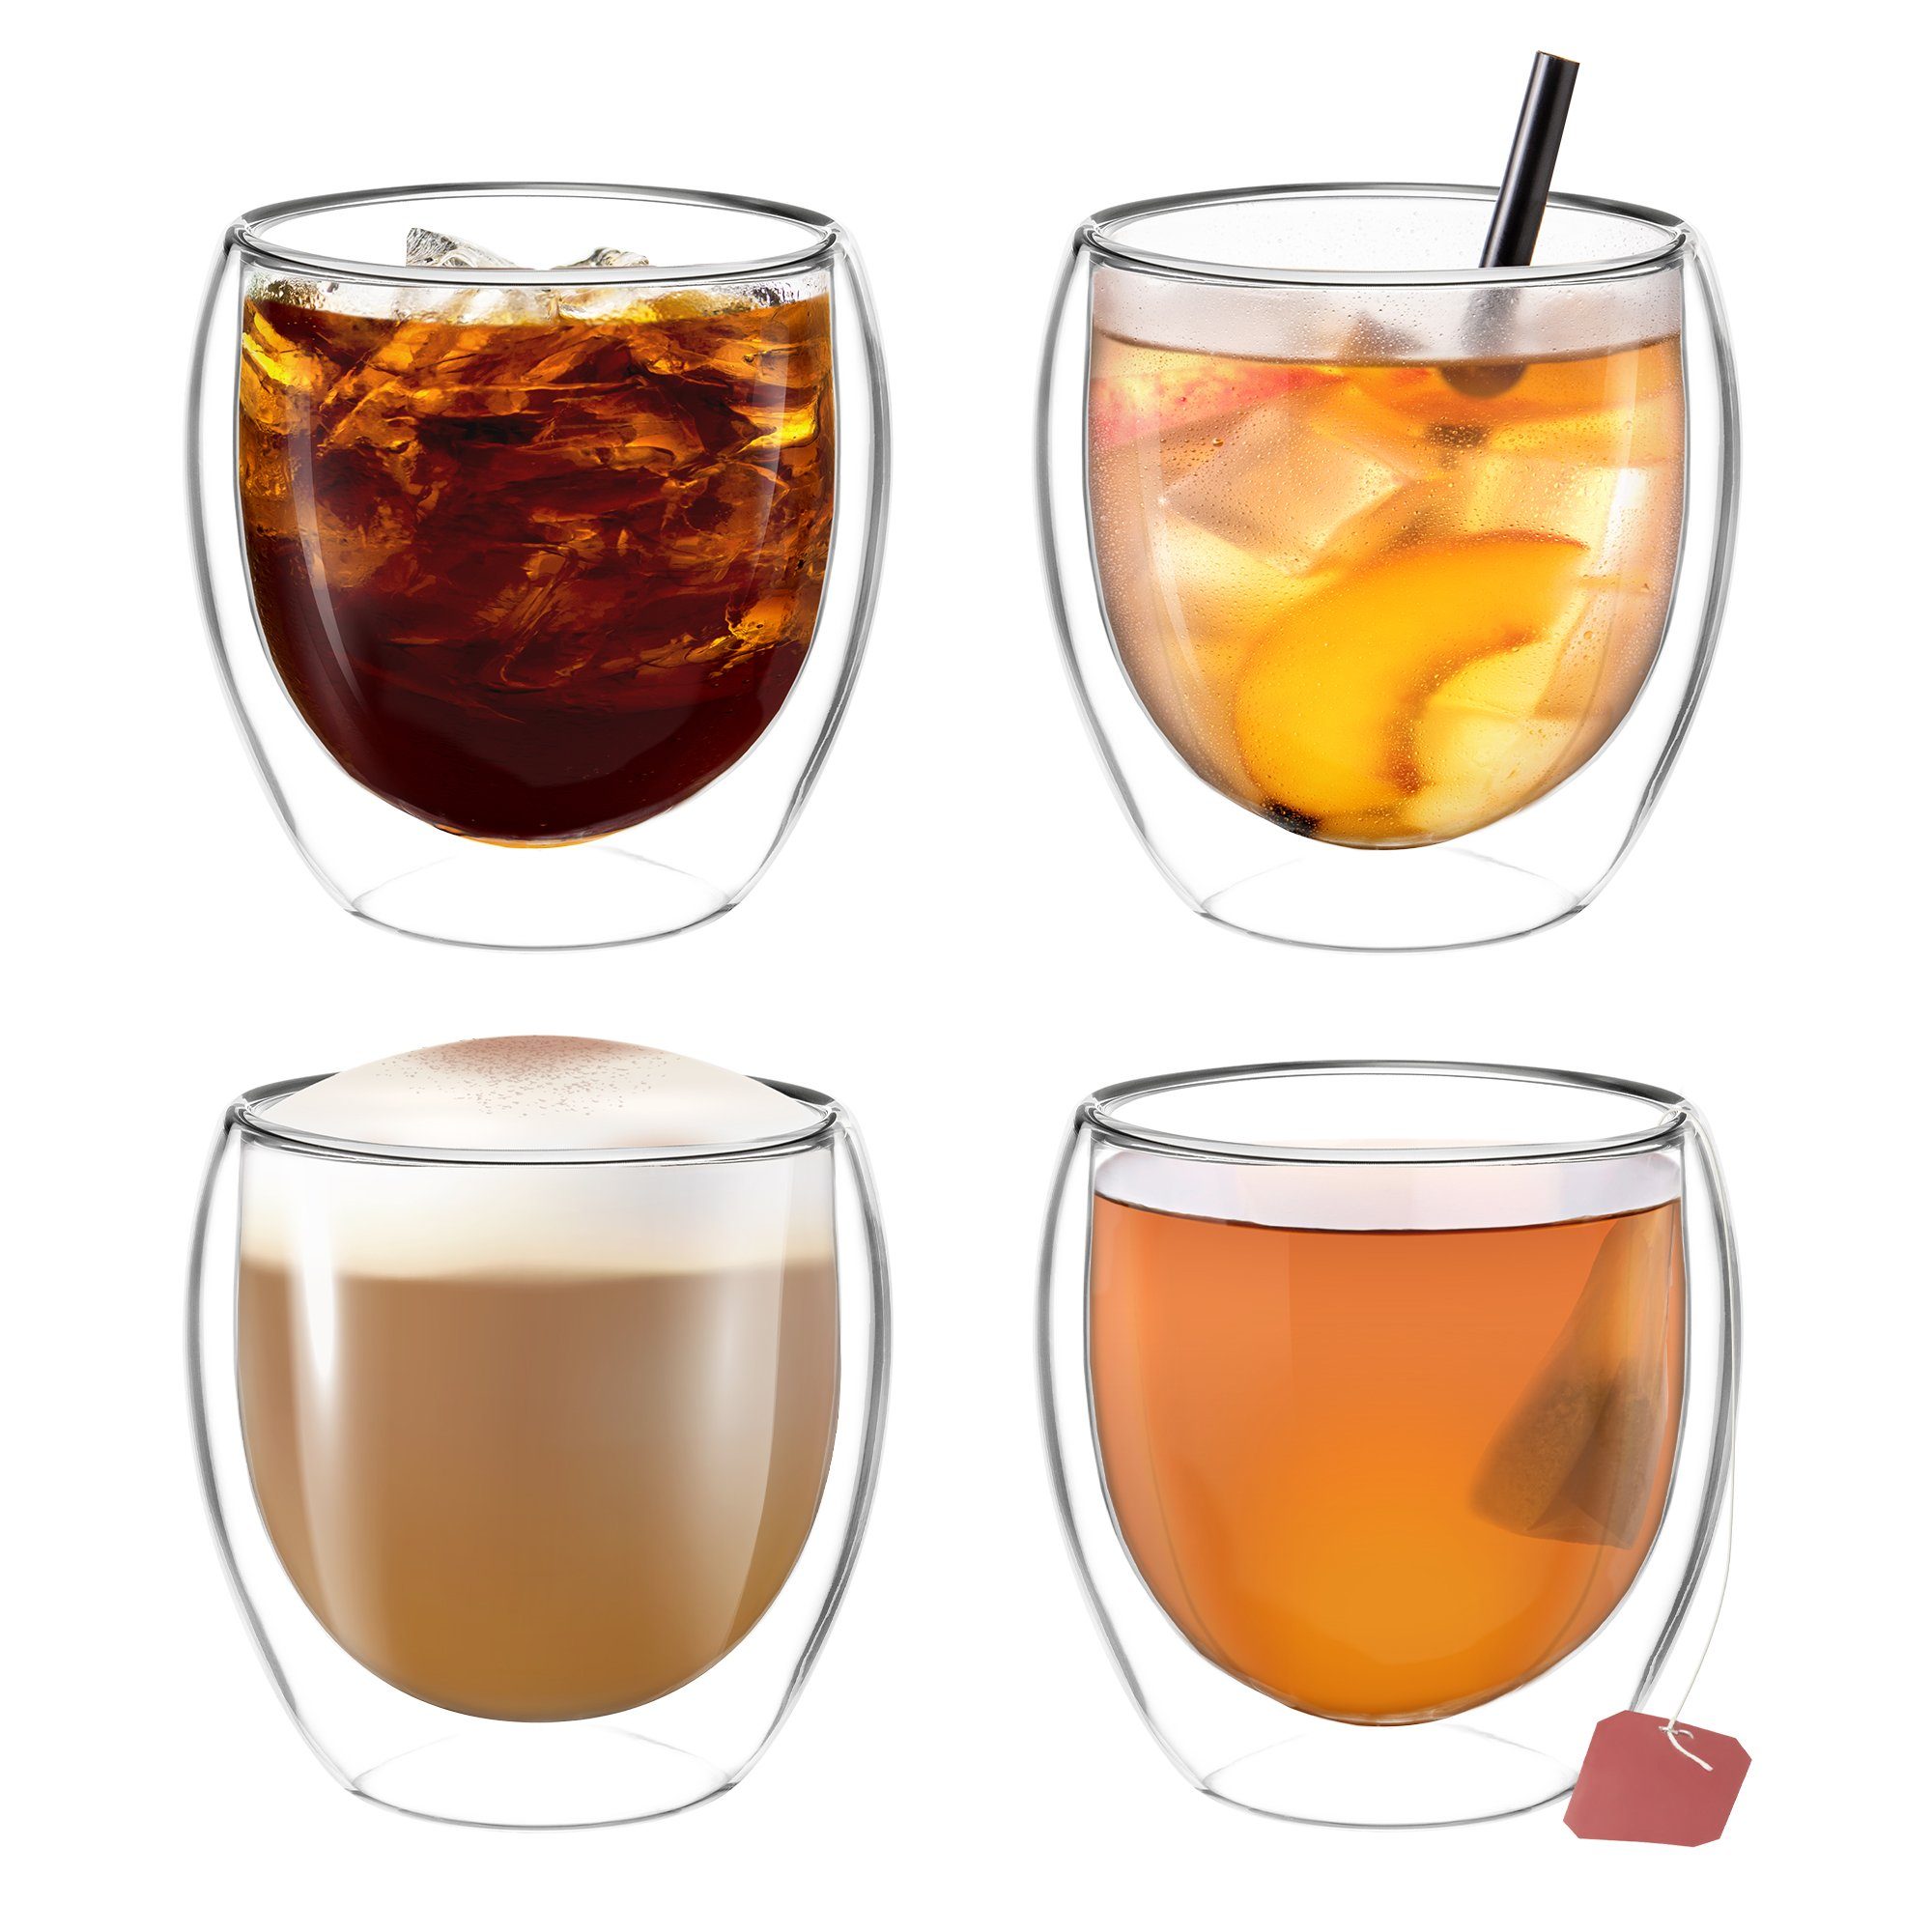 Impolio Latte-Macchiato-Glas Doppelwandige Gläser Set 4-teilig 250 ml,Teeglas, Kaffeeglas, Impolio, Doppelwandige Gläser